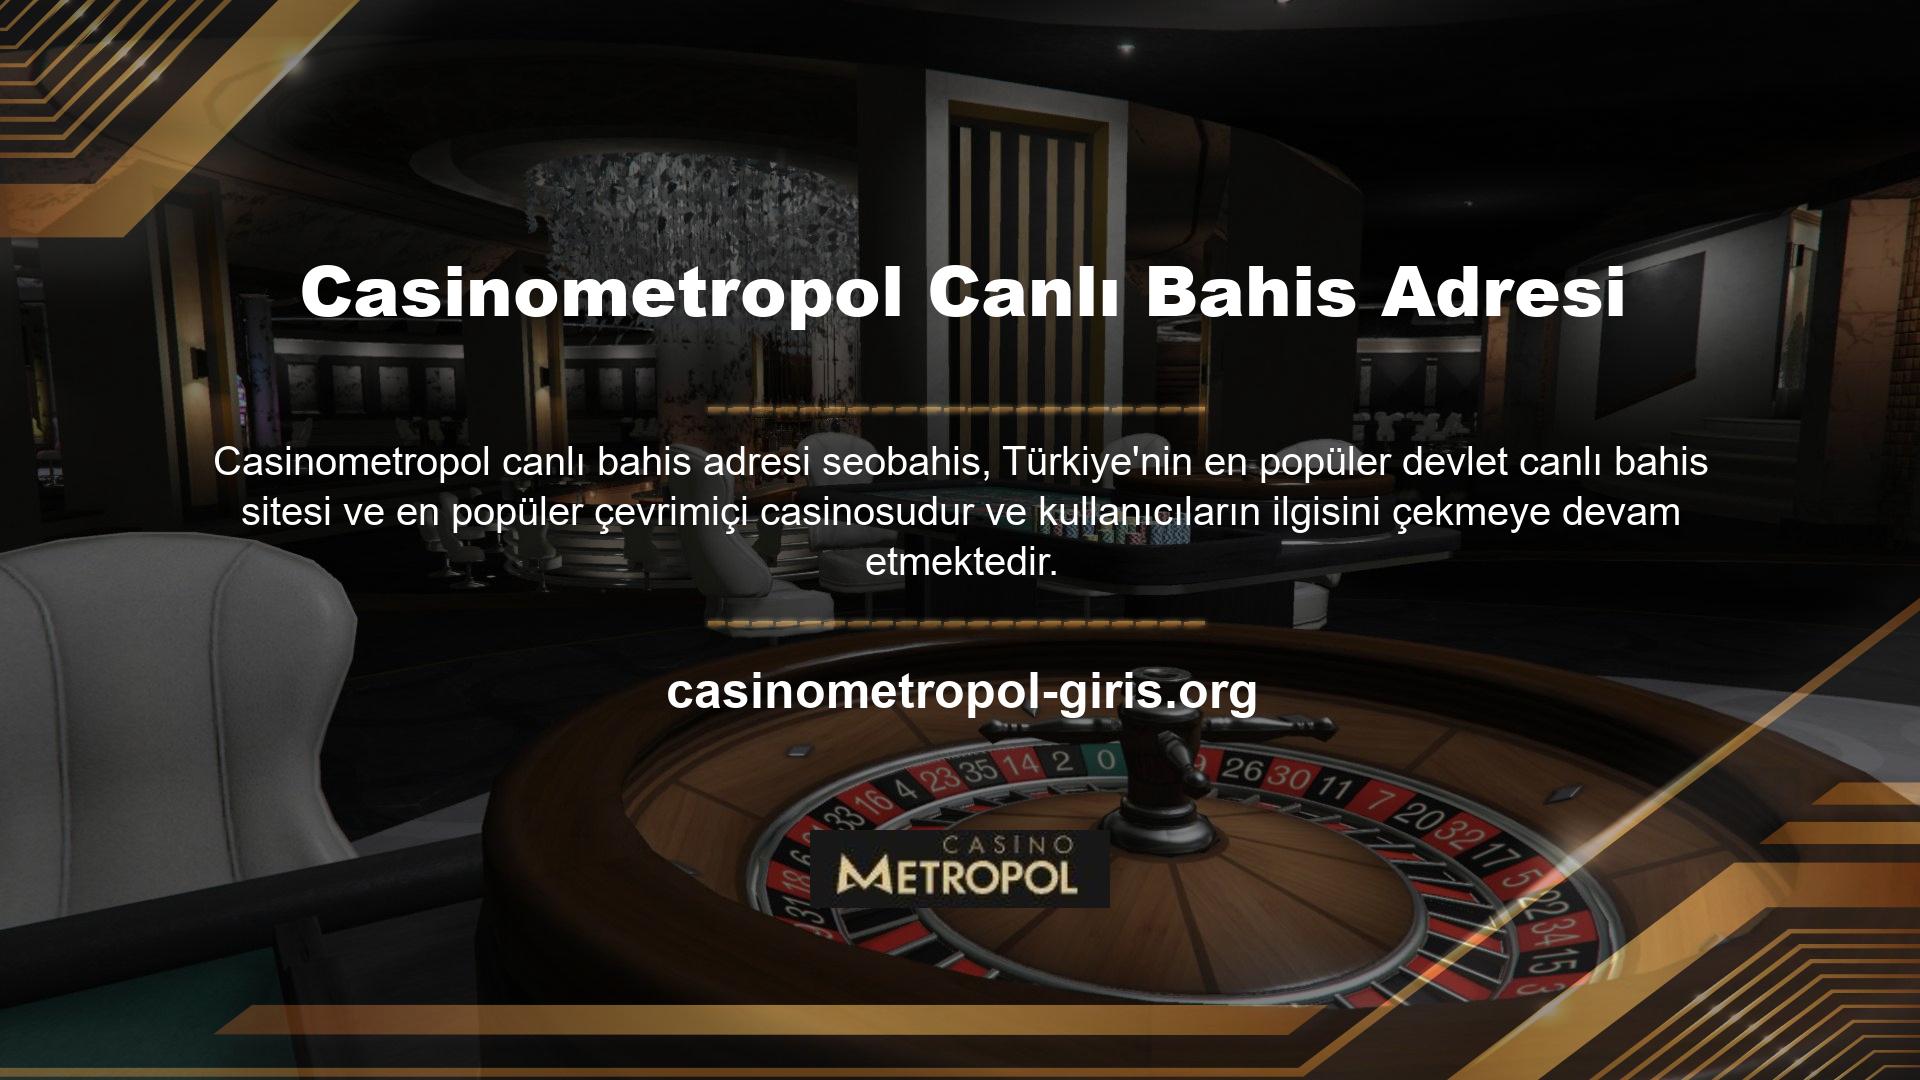 Casinometropol üzerinden sunulan bonuslara eşlik eden promosyonlar tüm Casinometropol kullanıcıları tarafından bilinmektedir